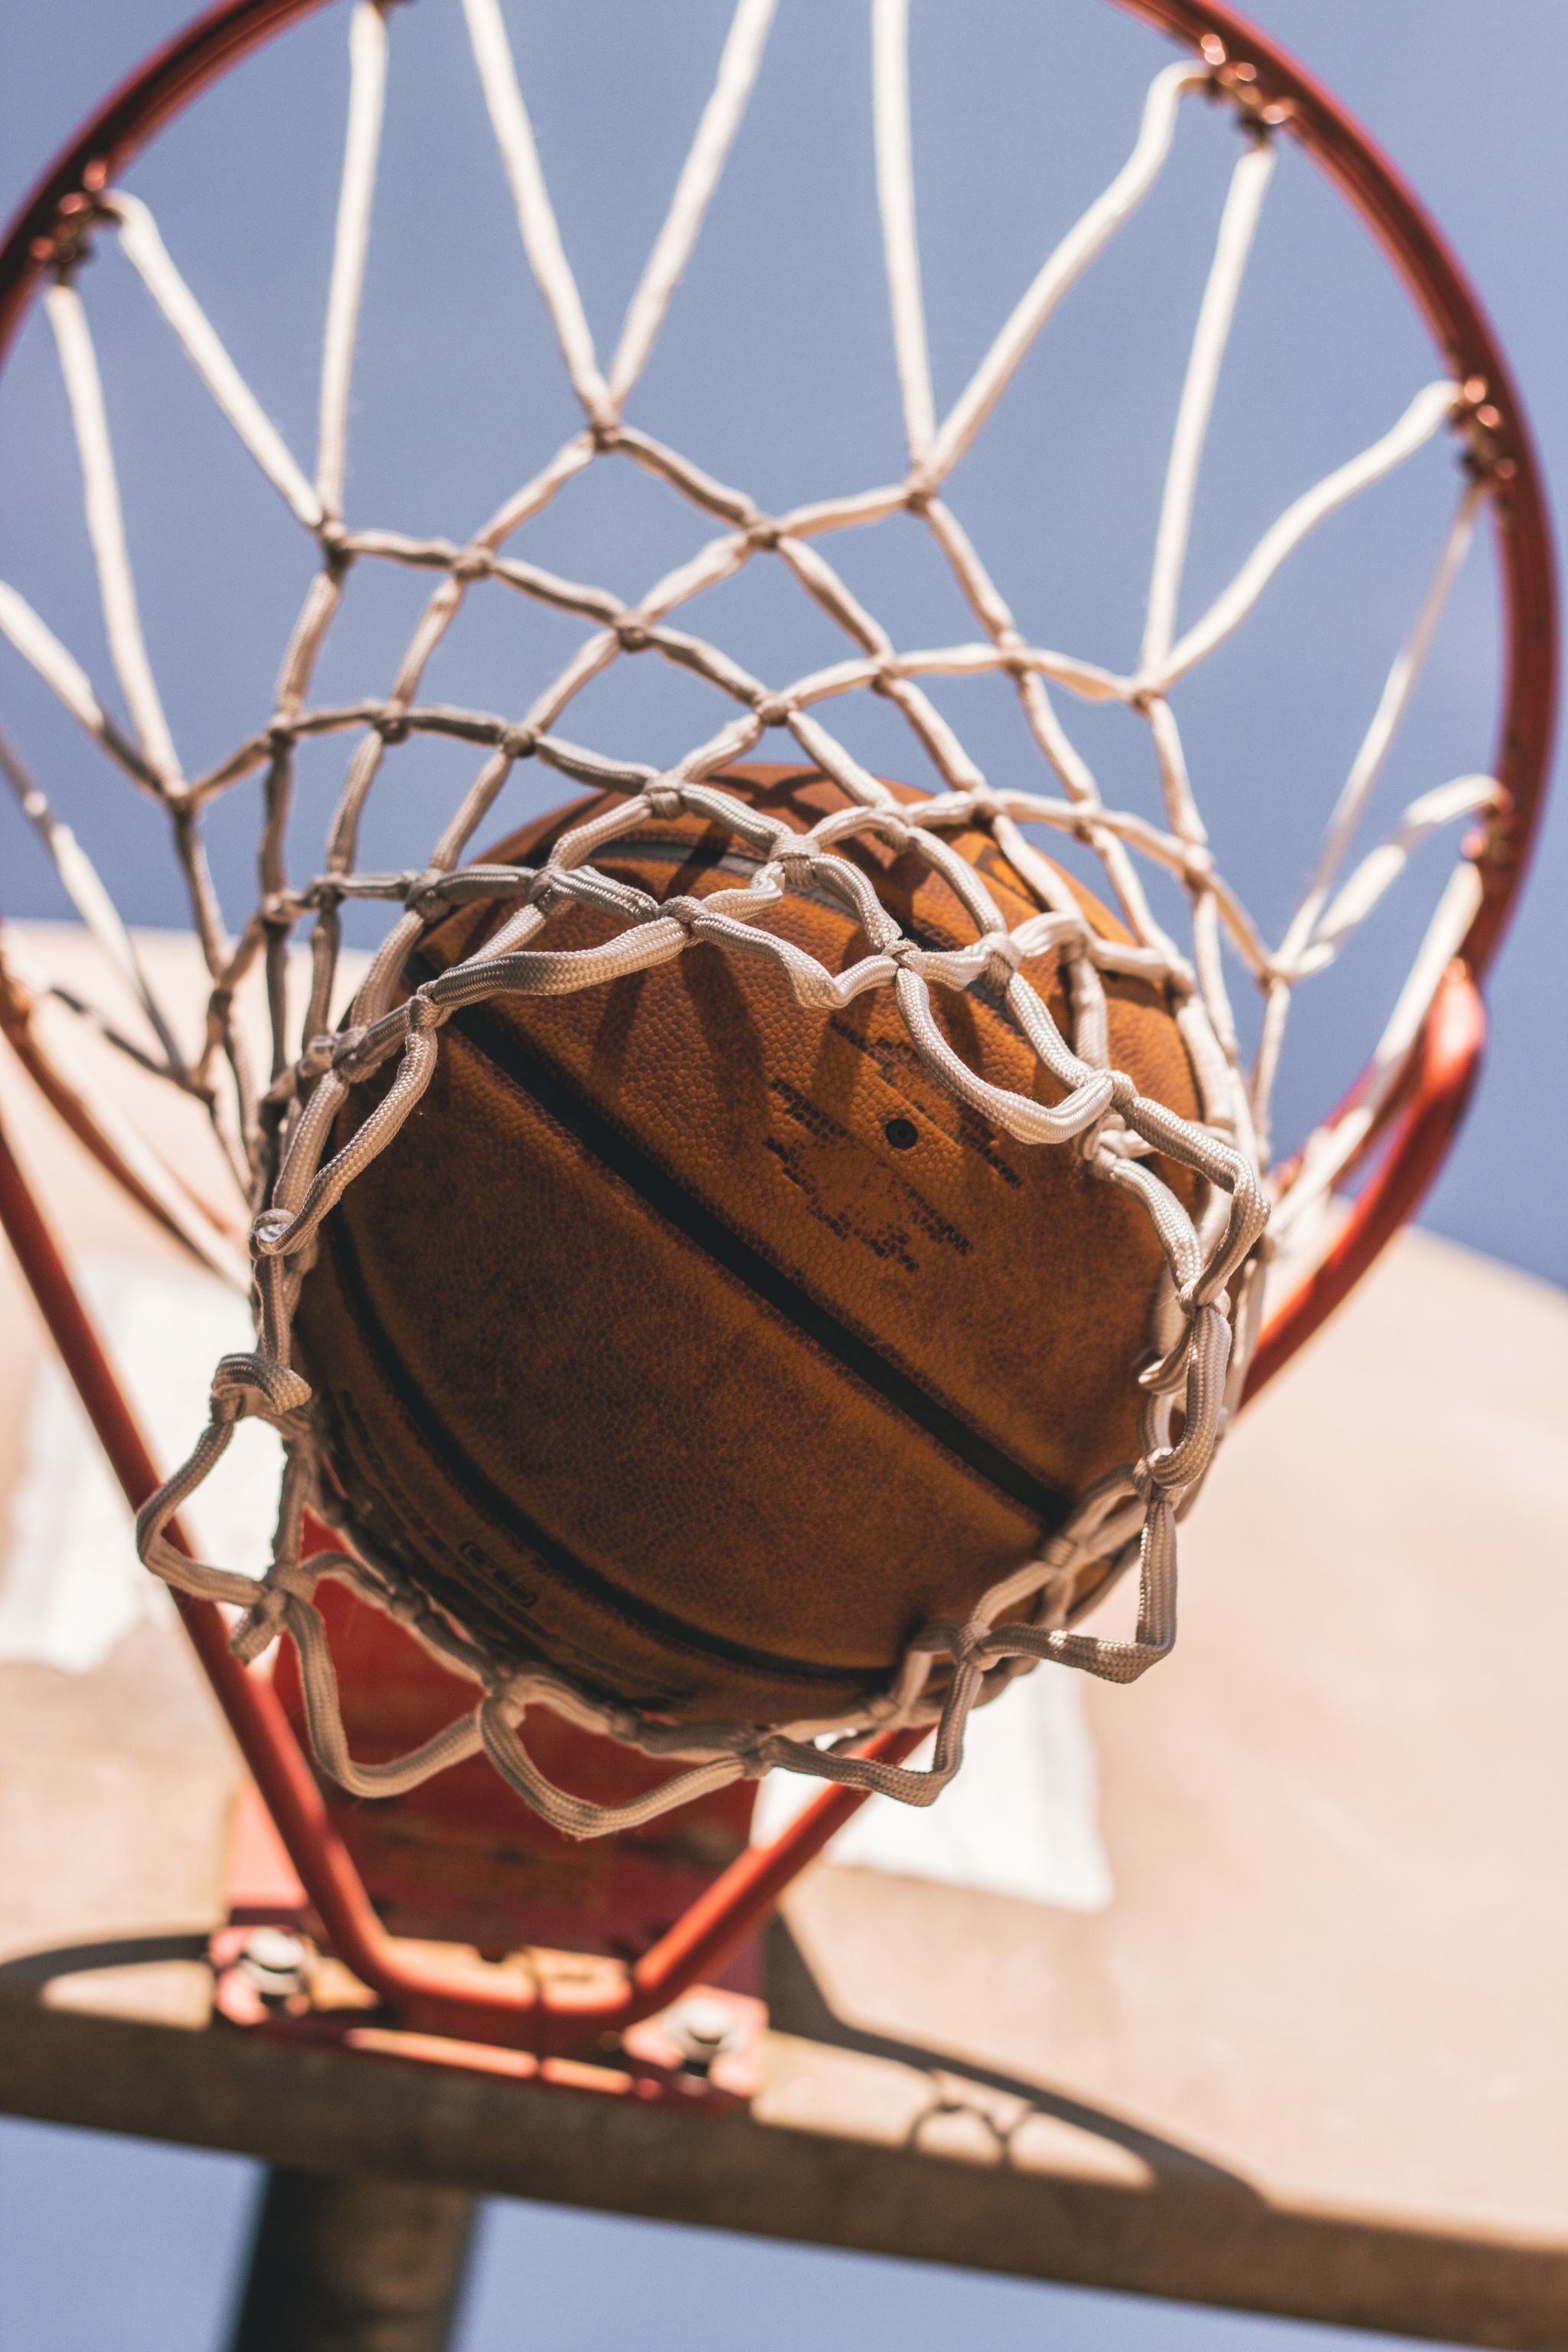 Basketball hoop, Net, Basketball, Team sport, Sports equipment, 